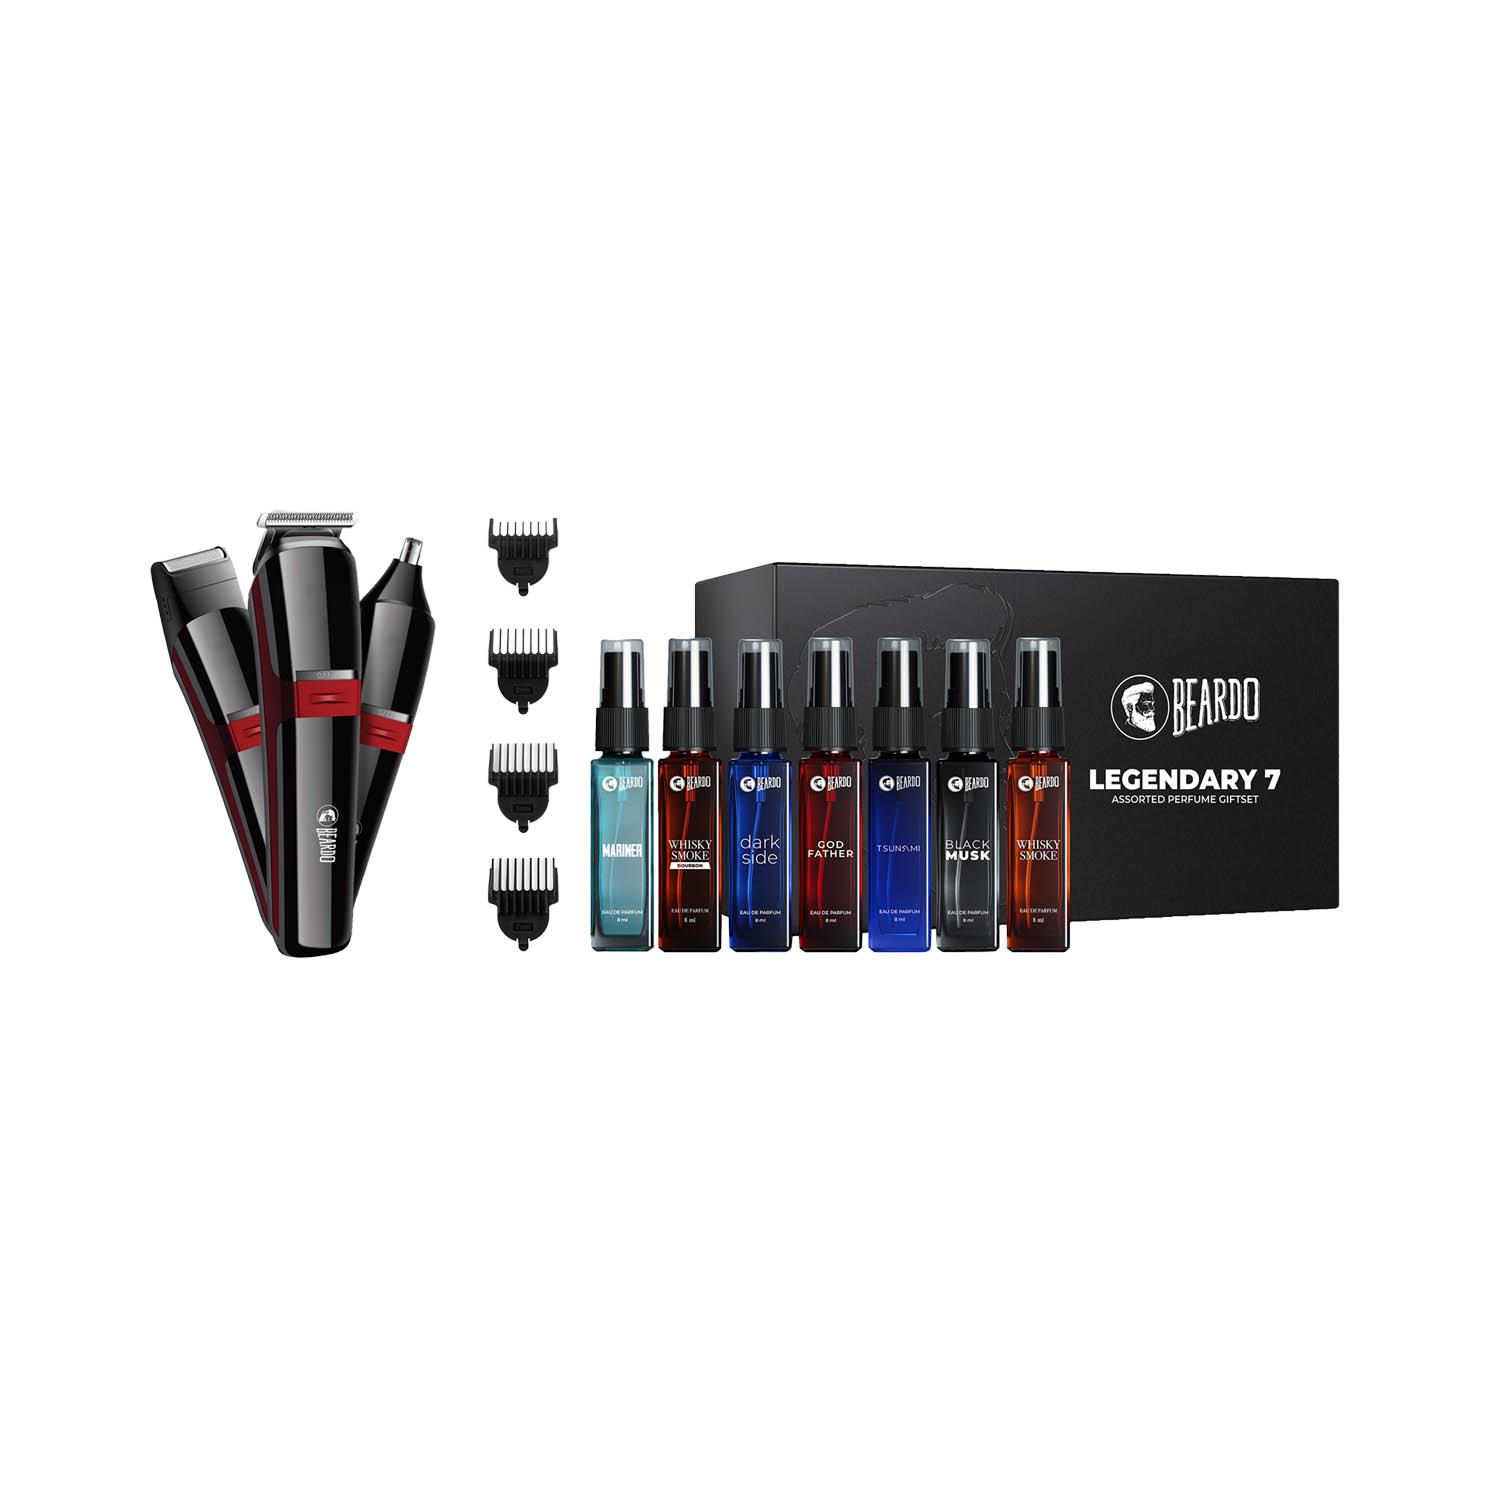 Beardo | Beardo Legendary 7 Assorted Perfume Gift Set & APE-X 3-In-1 Multipurpose Trimmer - Black & Red Combo